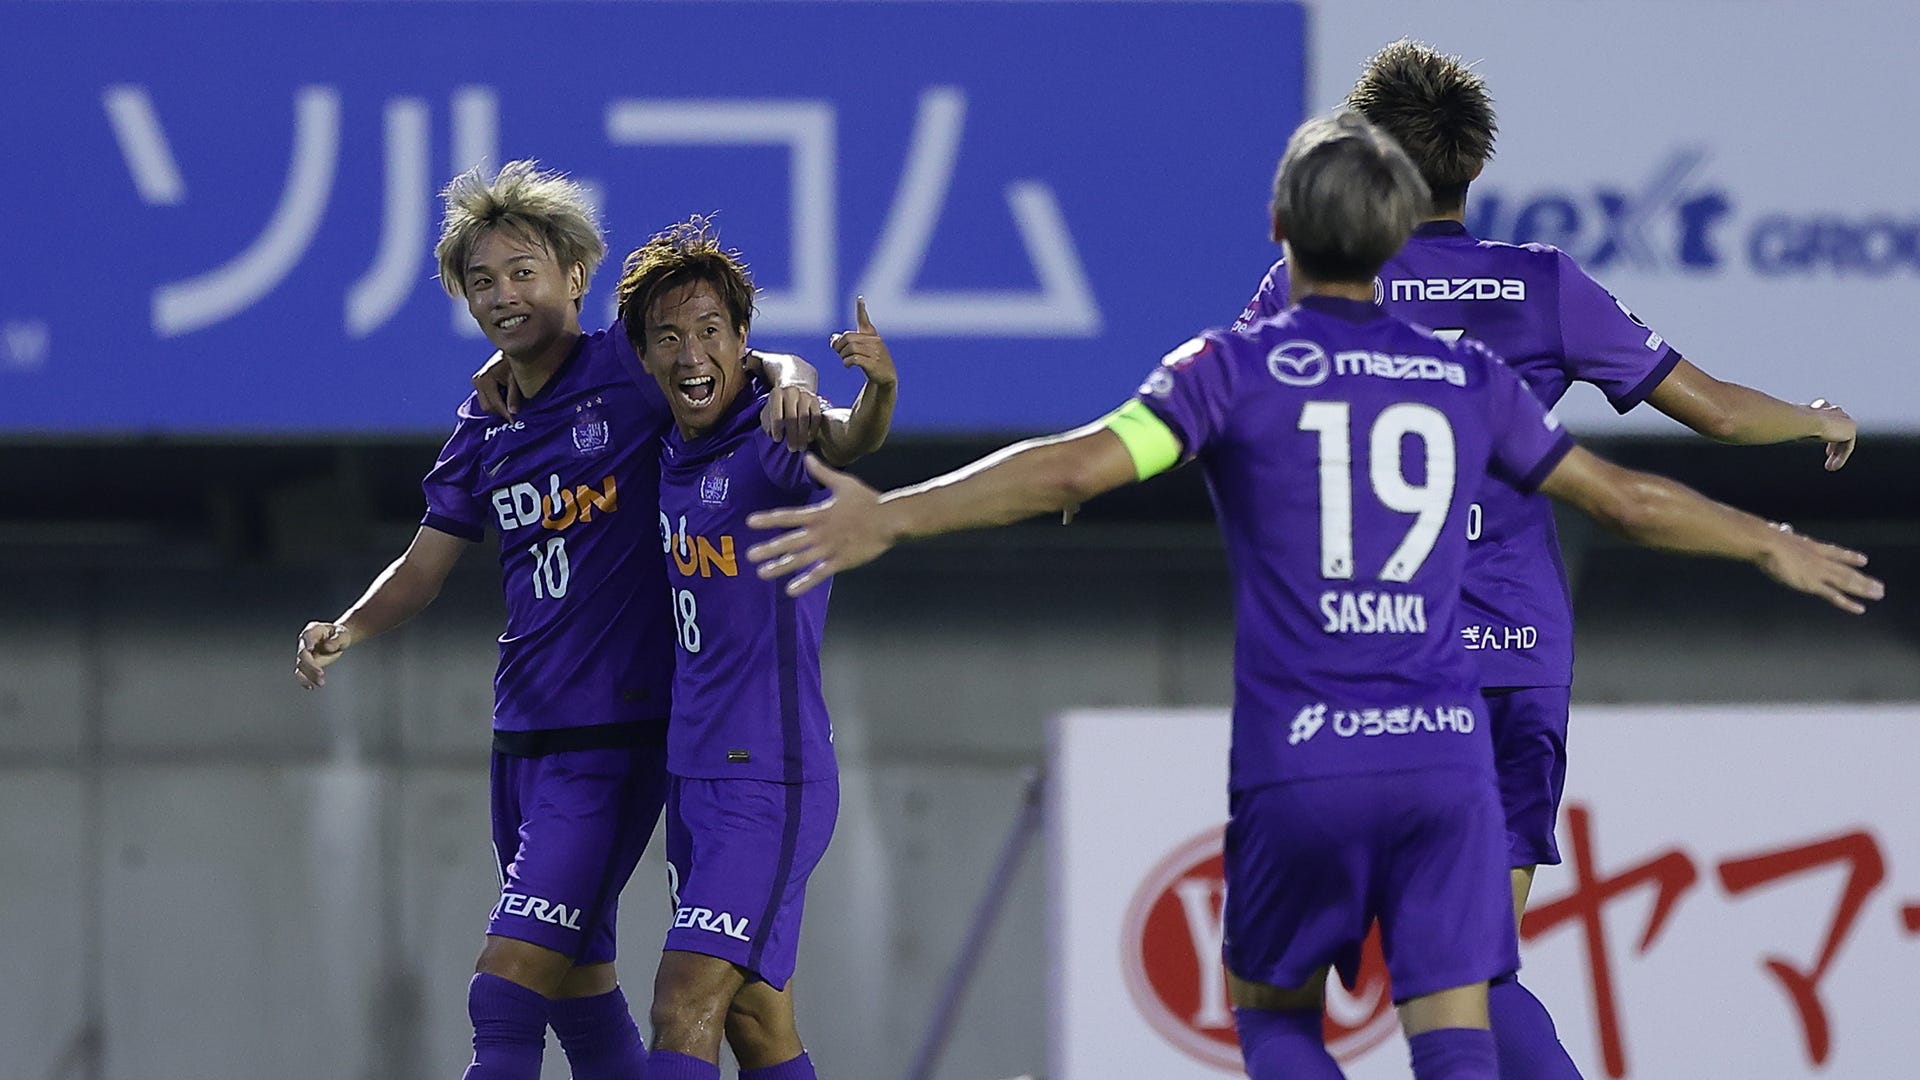 広島 リーグ首位の横浜fmを相手に先勝 柏弾など3発快勝で第2戦へ Goal Com 日本